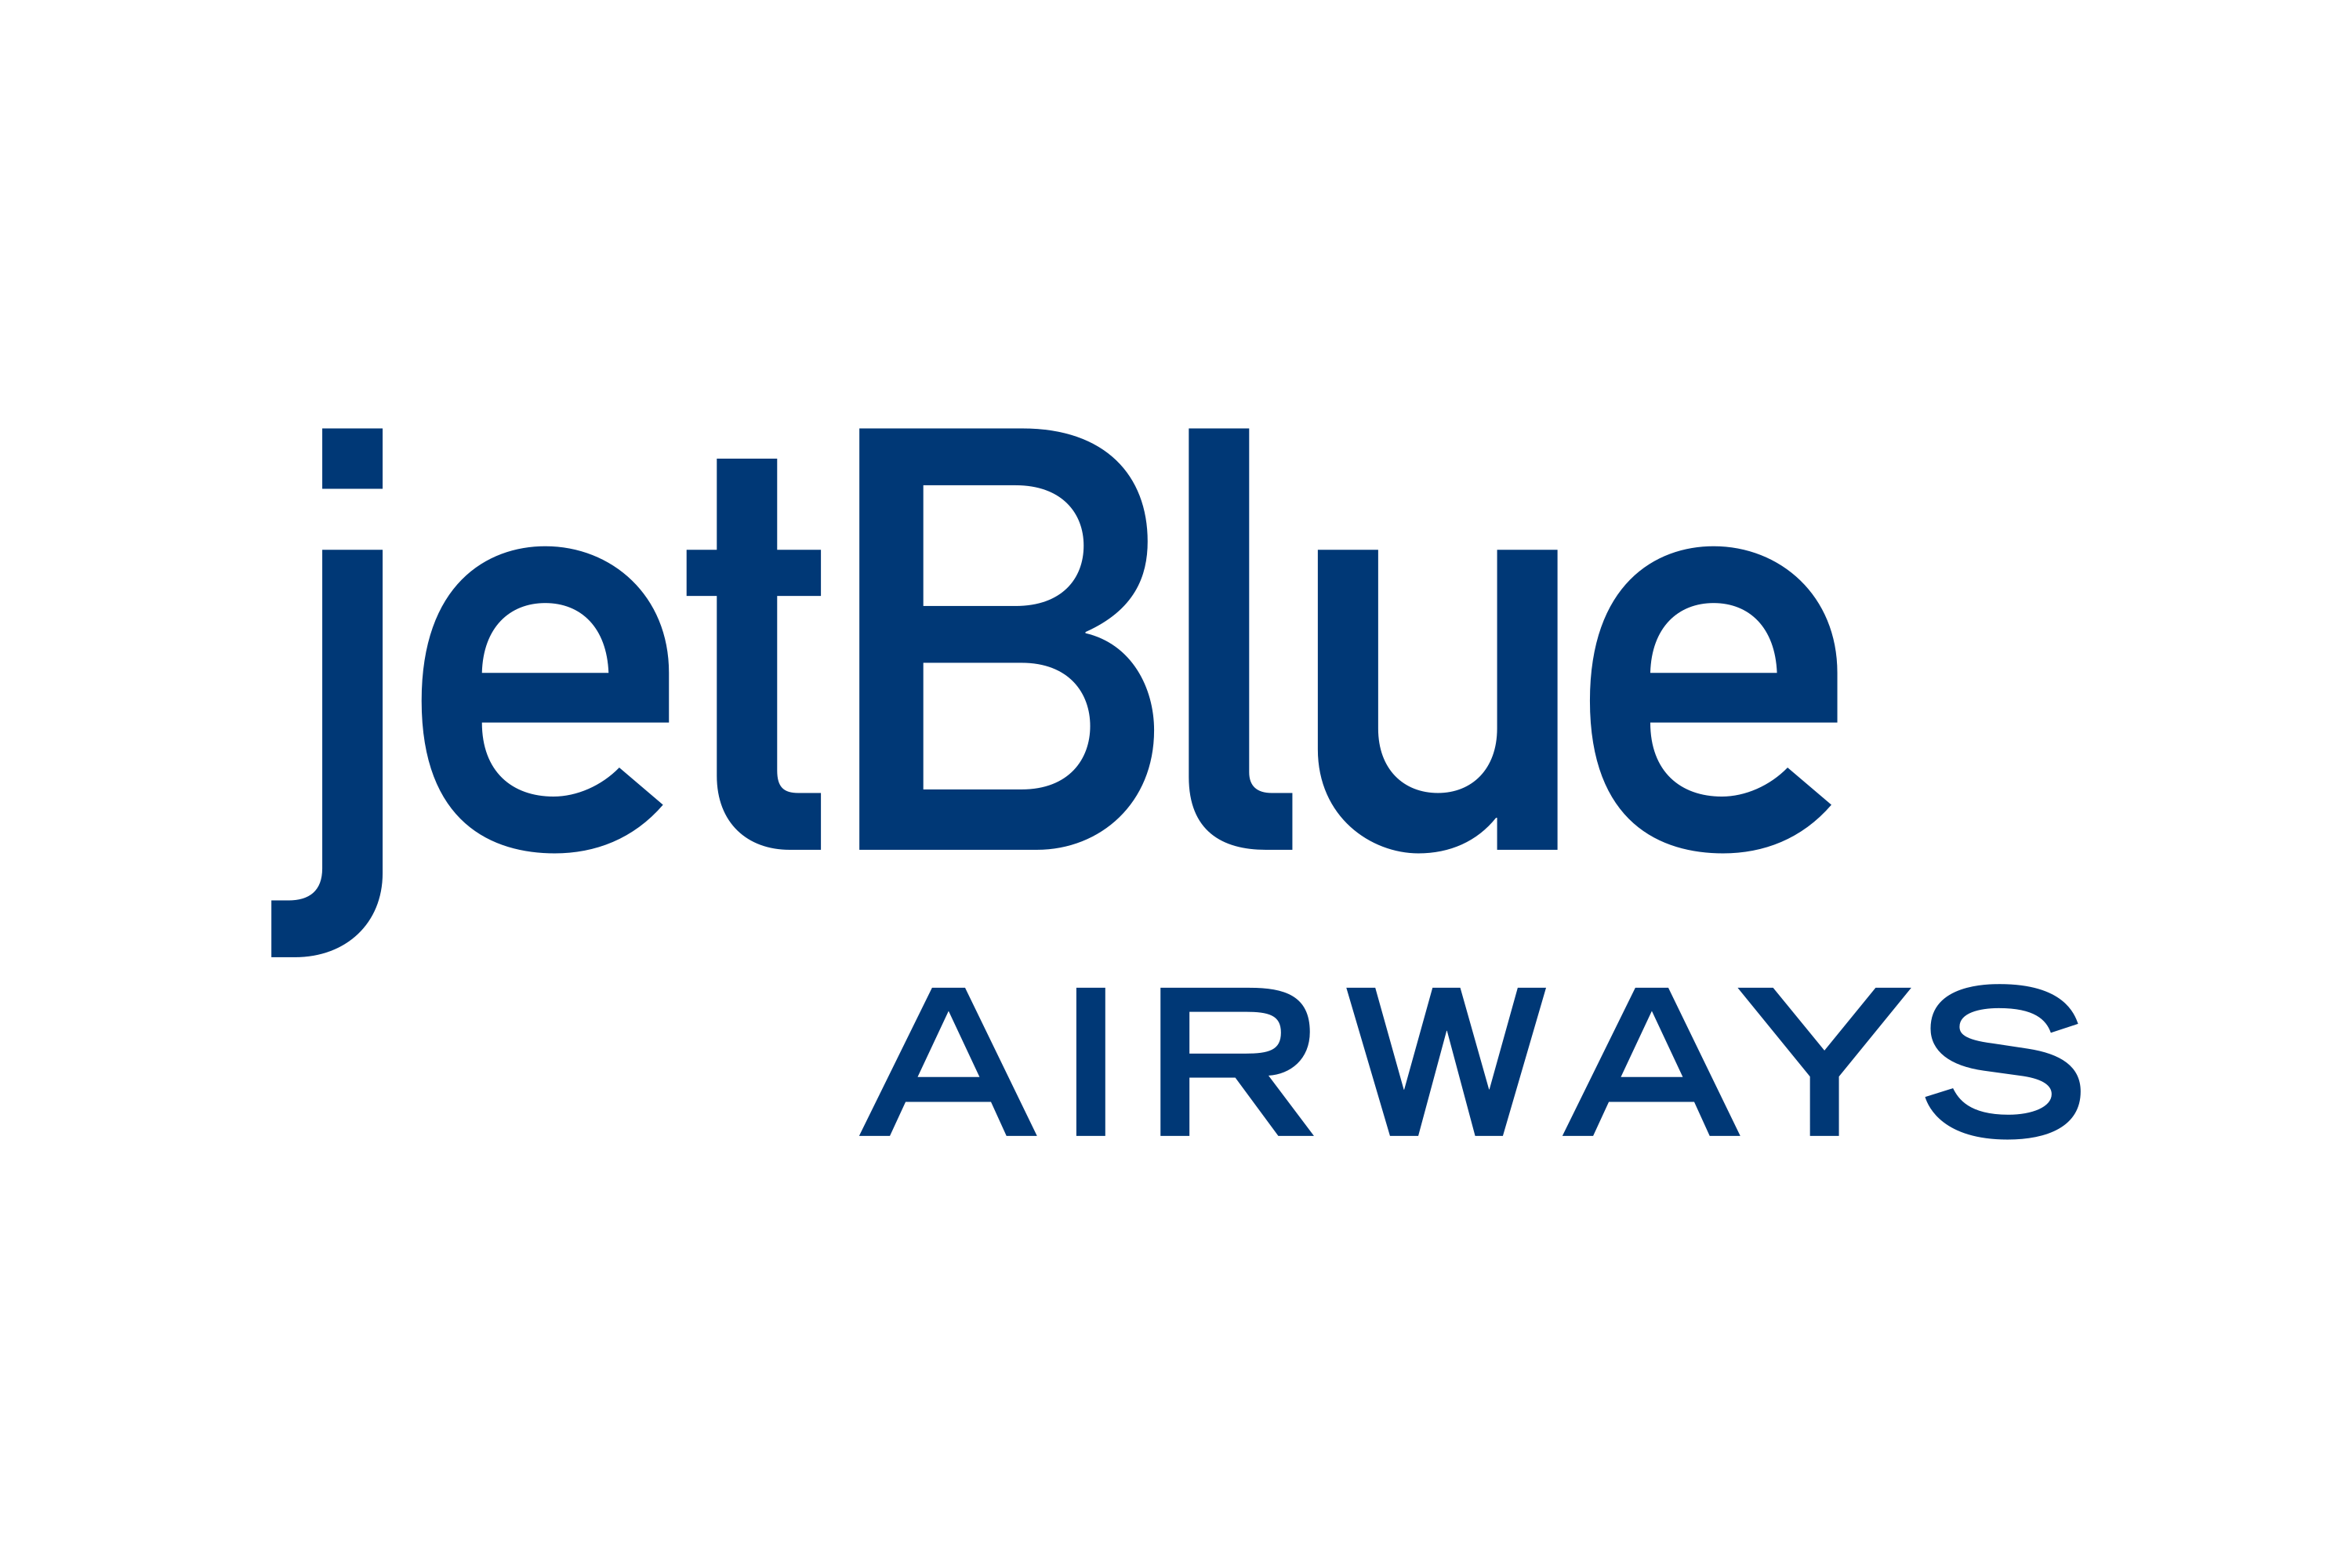 JetBlue Airways Hamilton Office